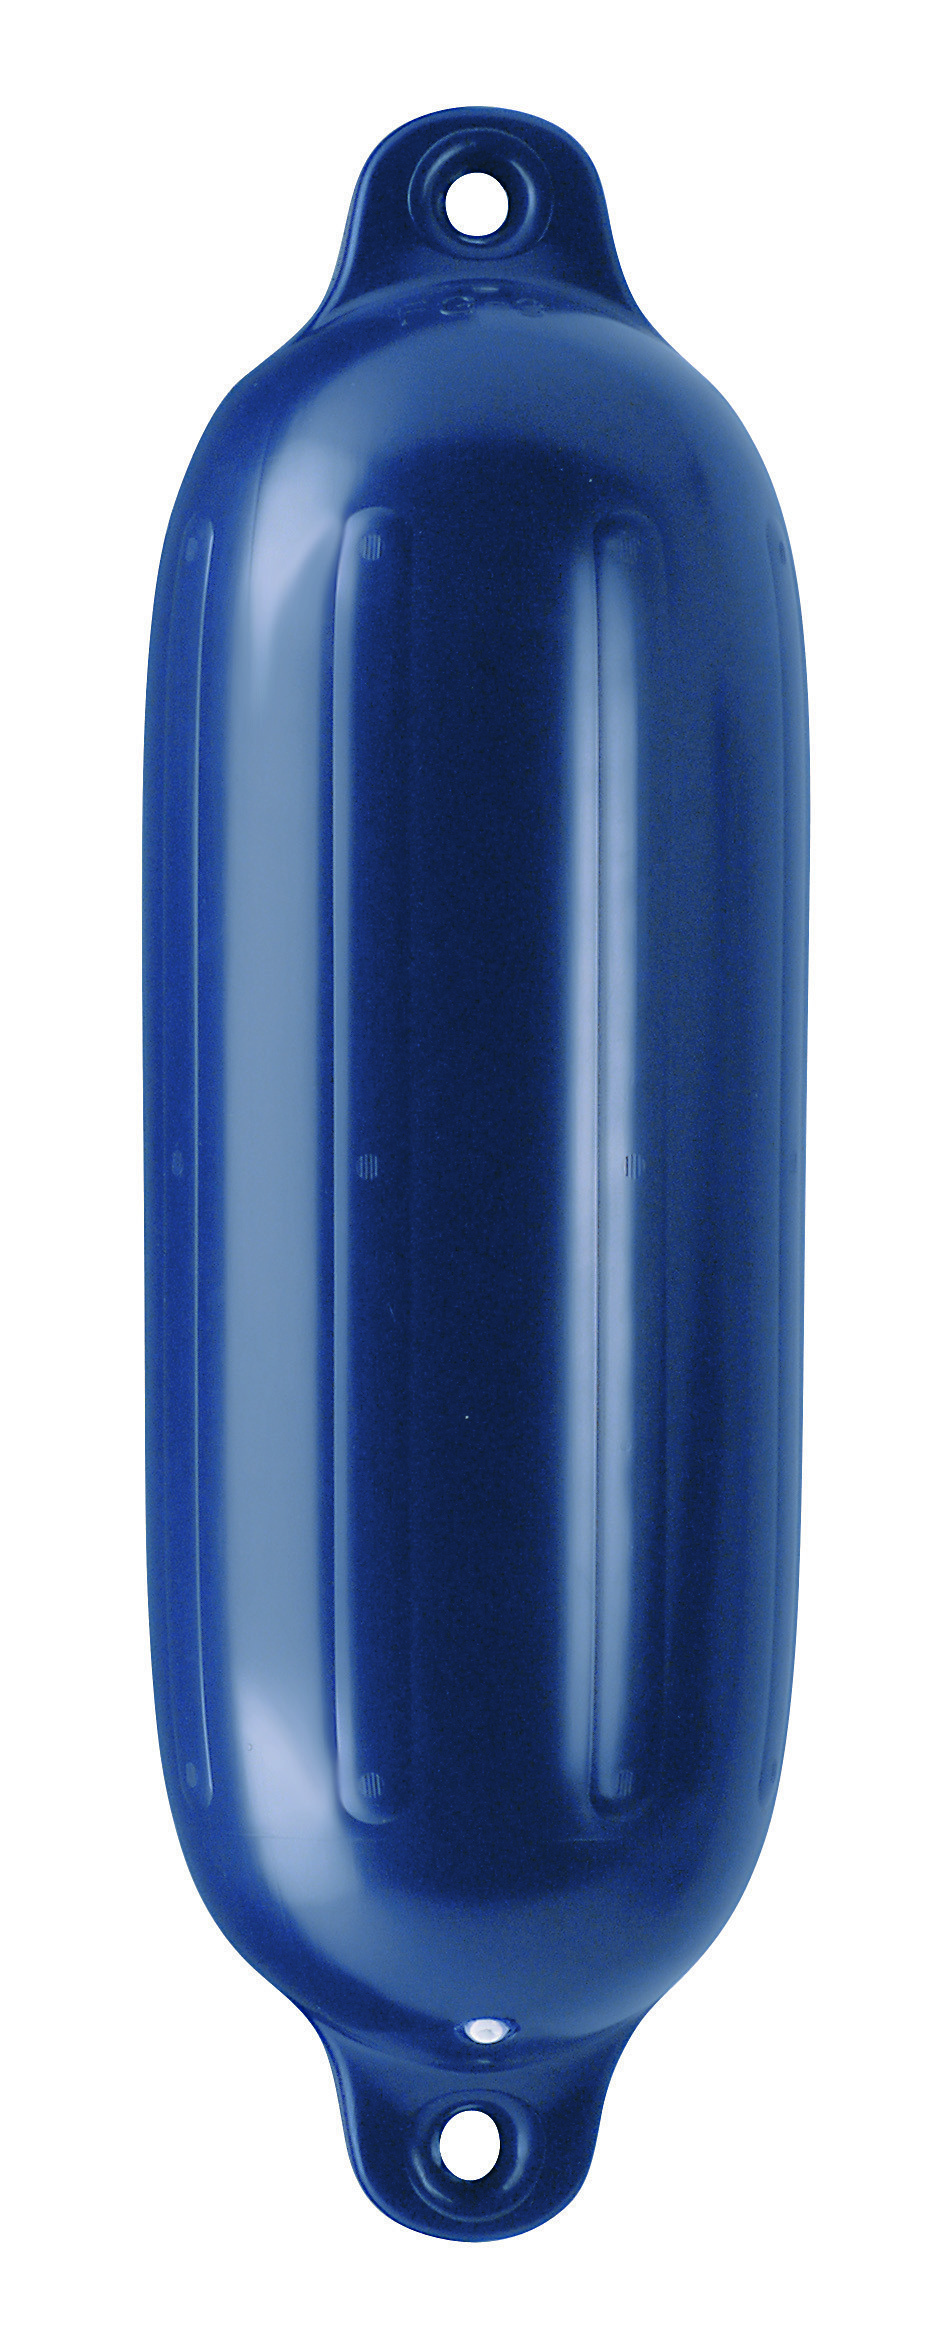 17.5 - Μπαλόνι POLYFORM Με Διπλό Μάτι Σειρά G Χρώματος Μπλε 11x40.7cm